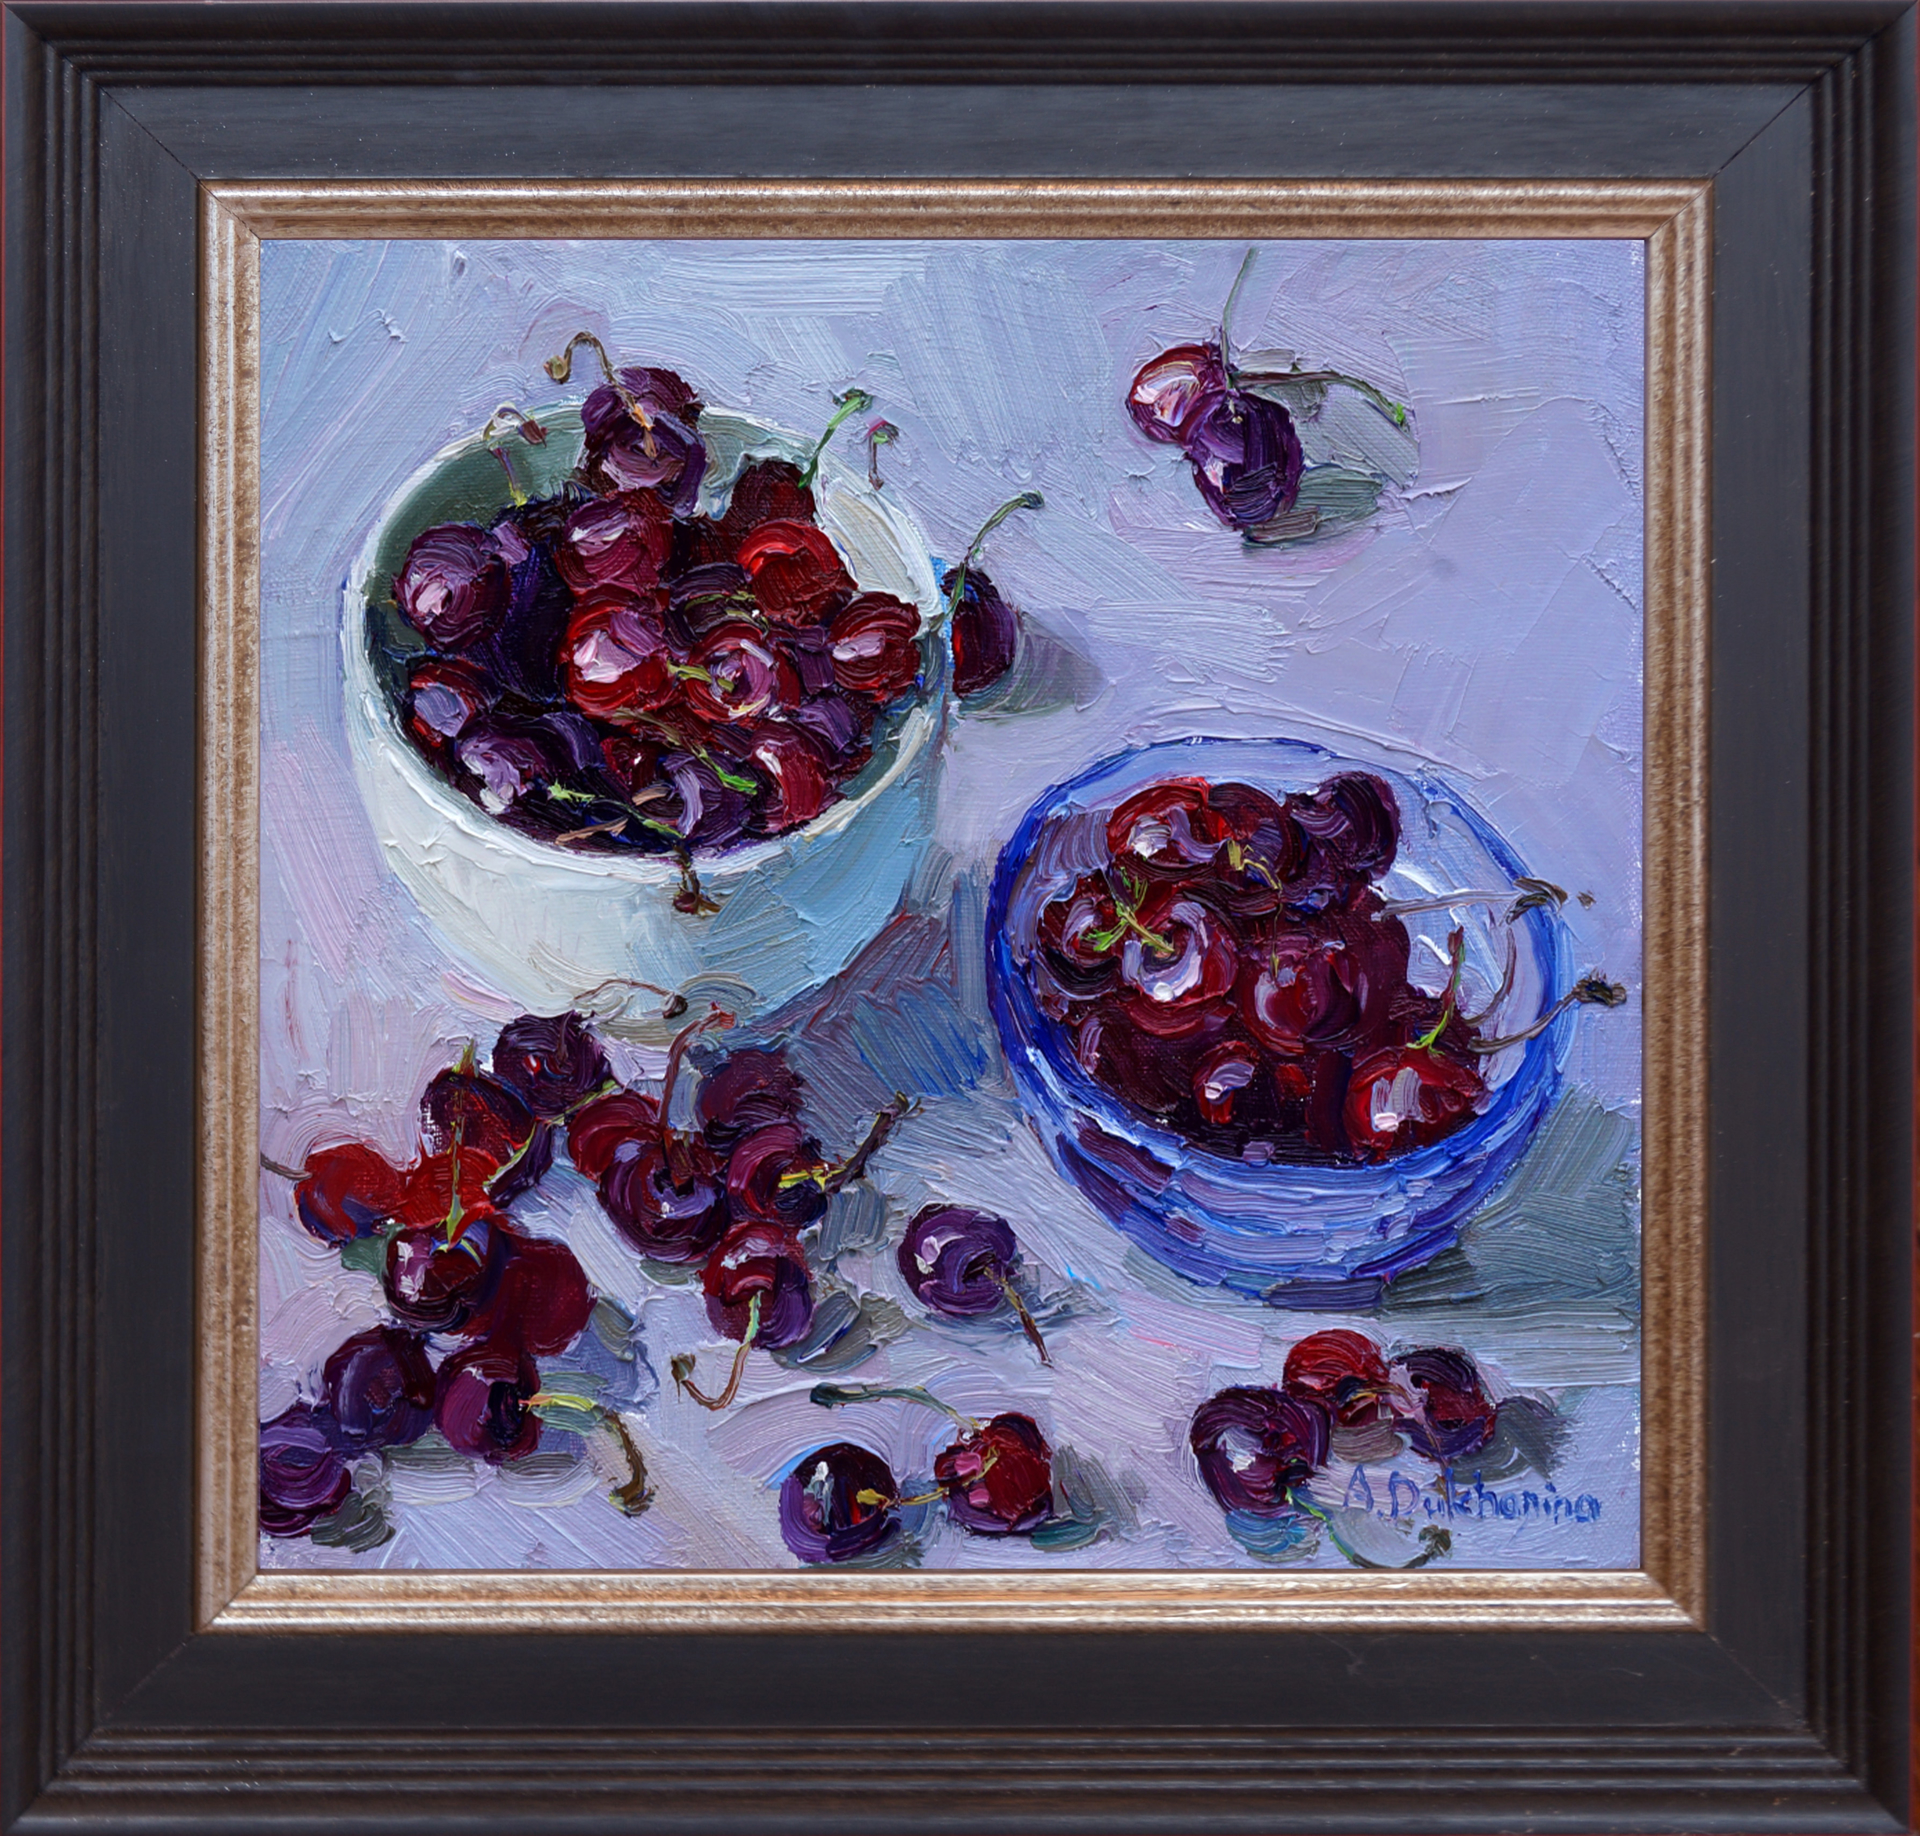 Cherries by Anastasia Dukhanina